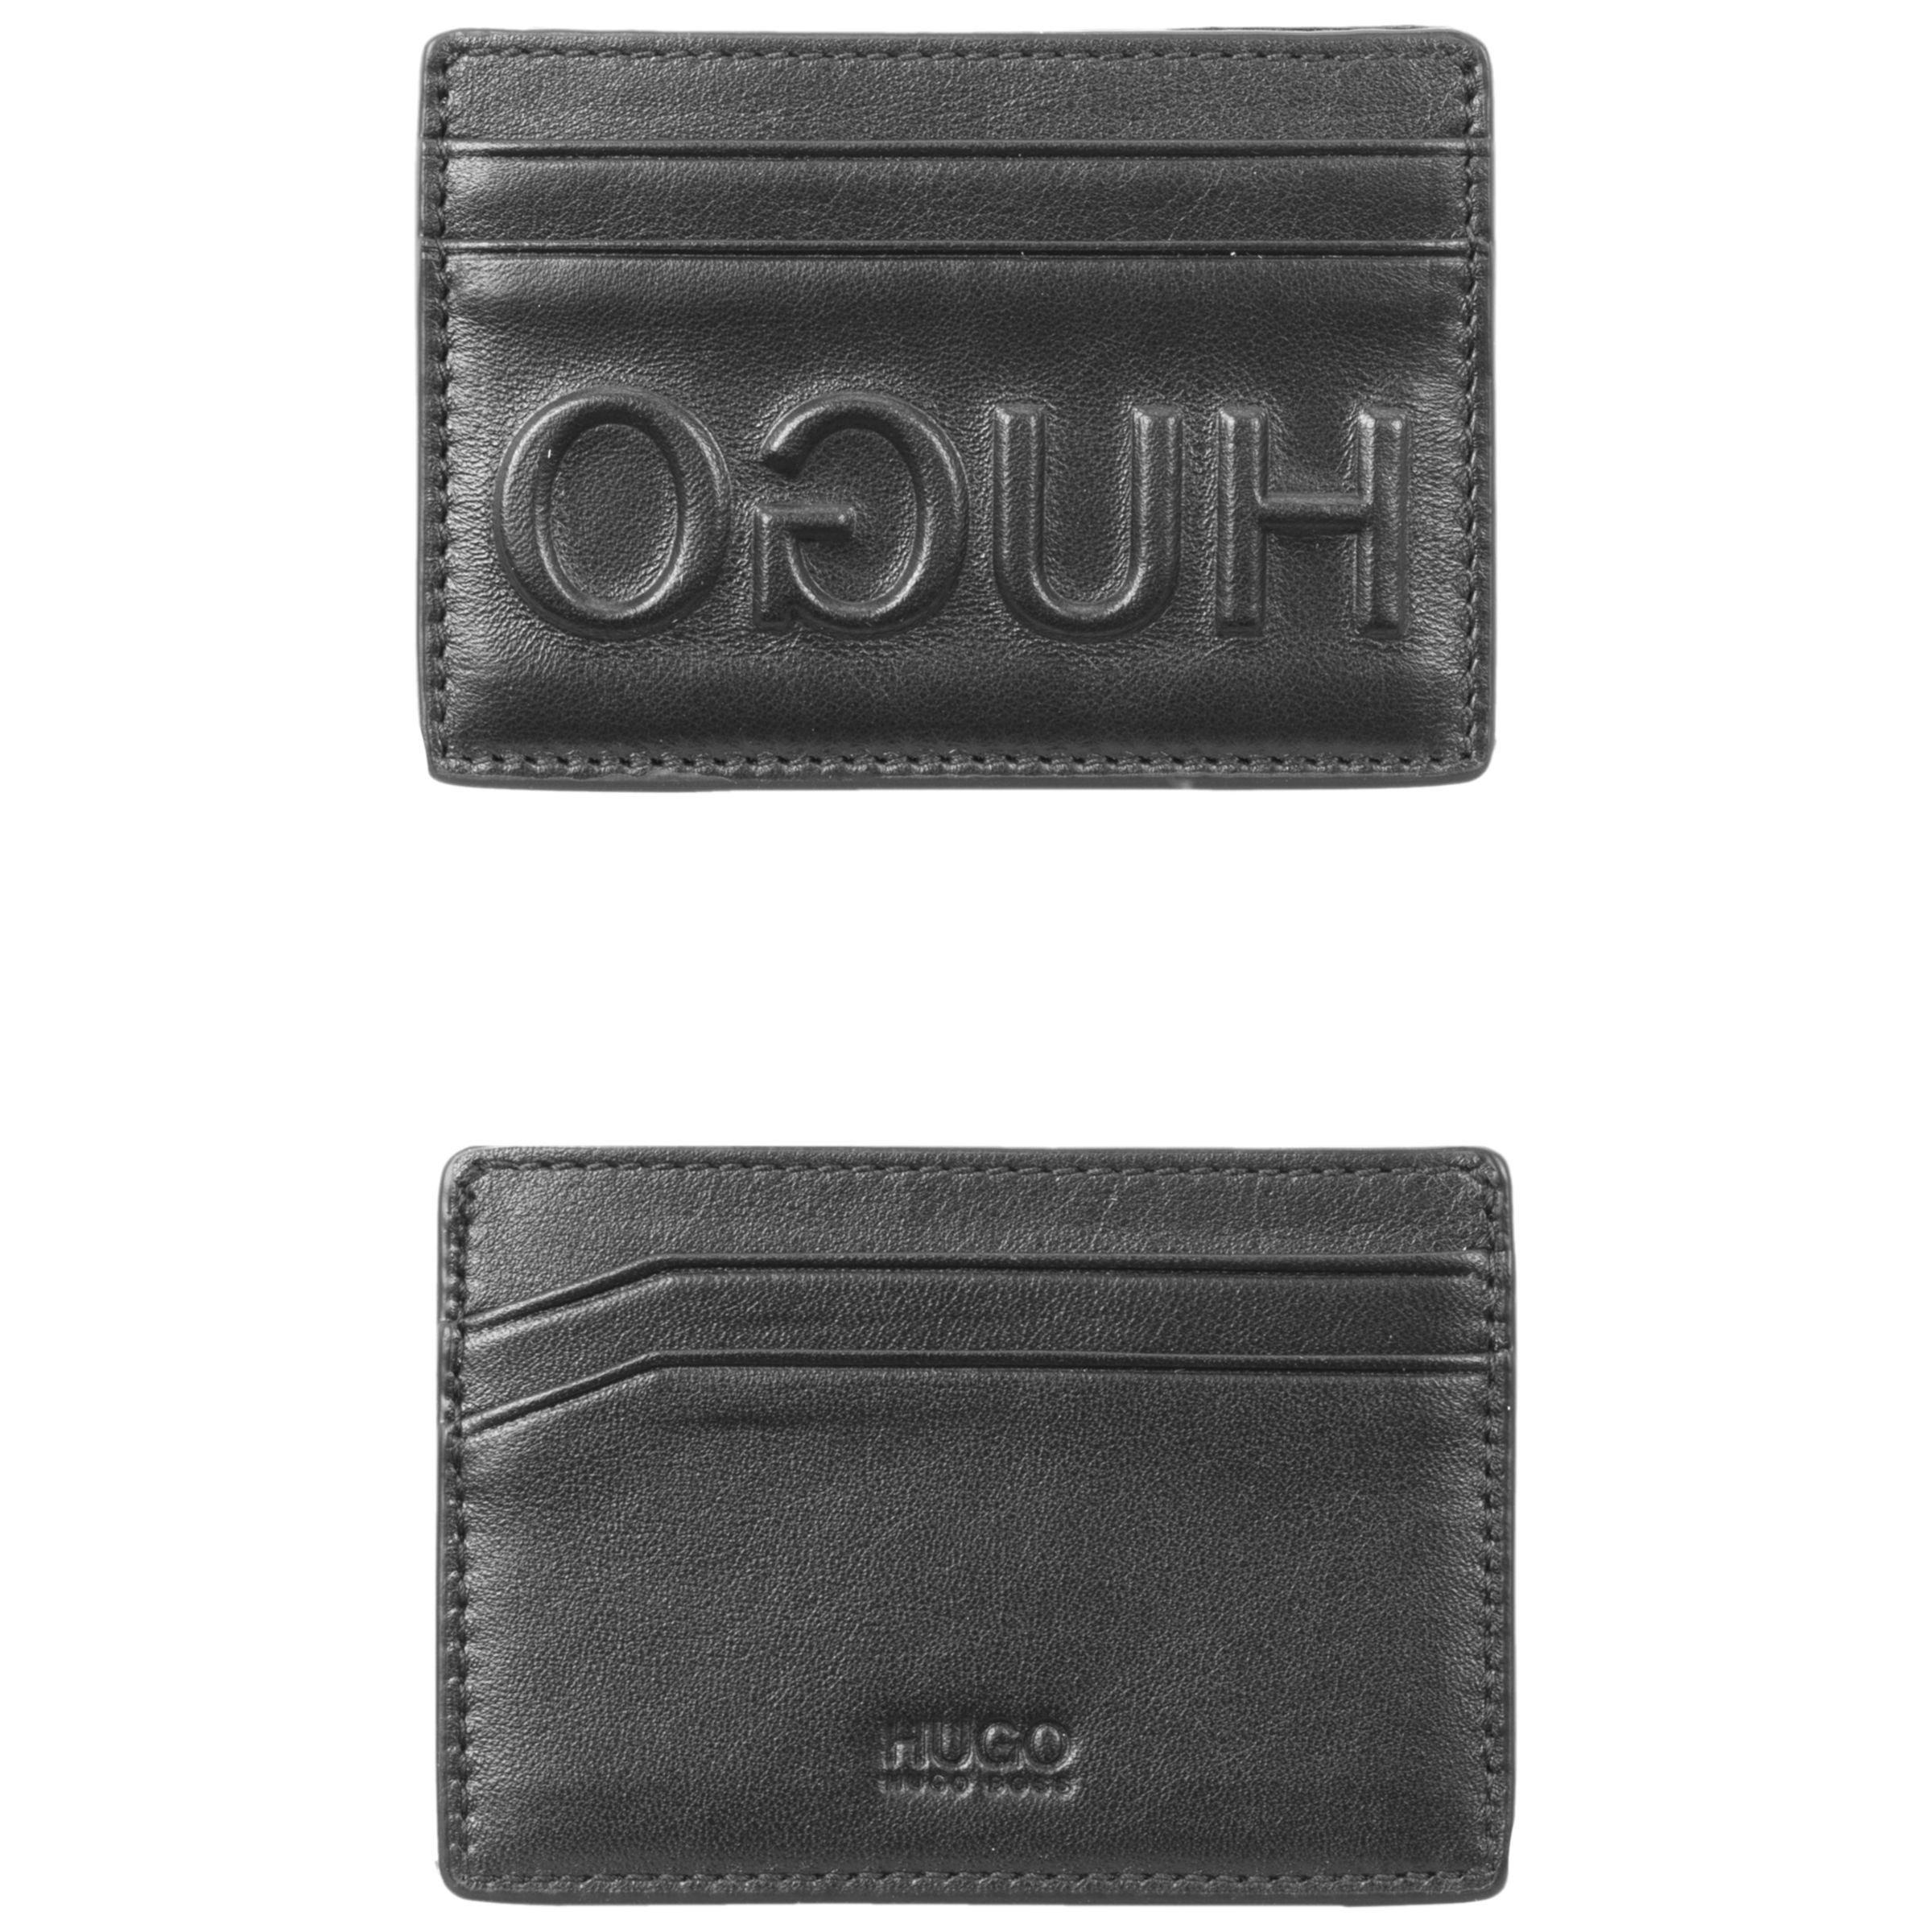 hugo boss card wallet